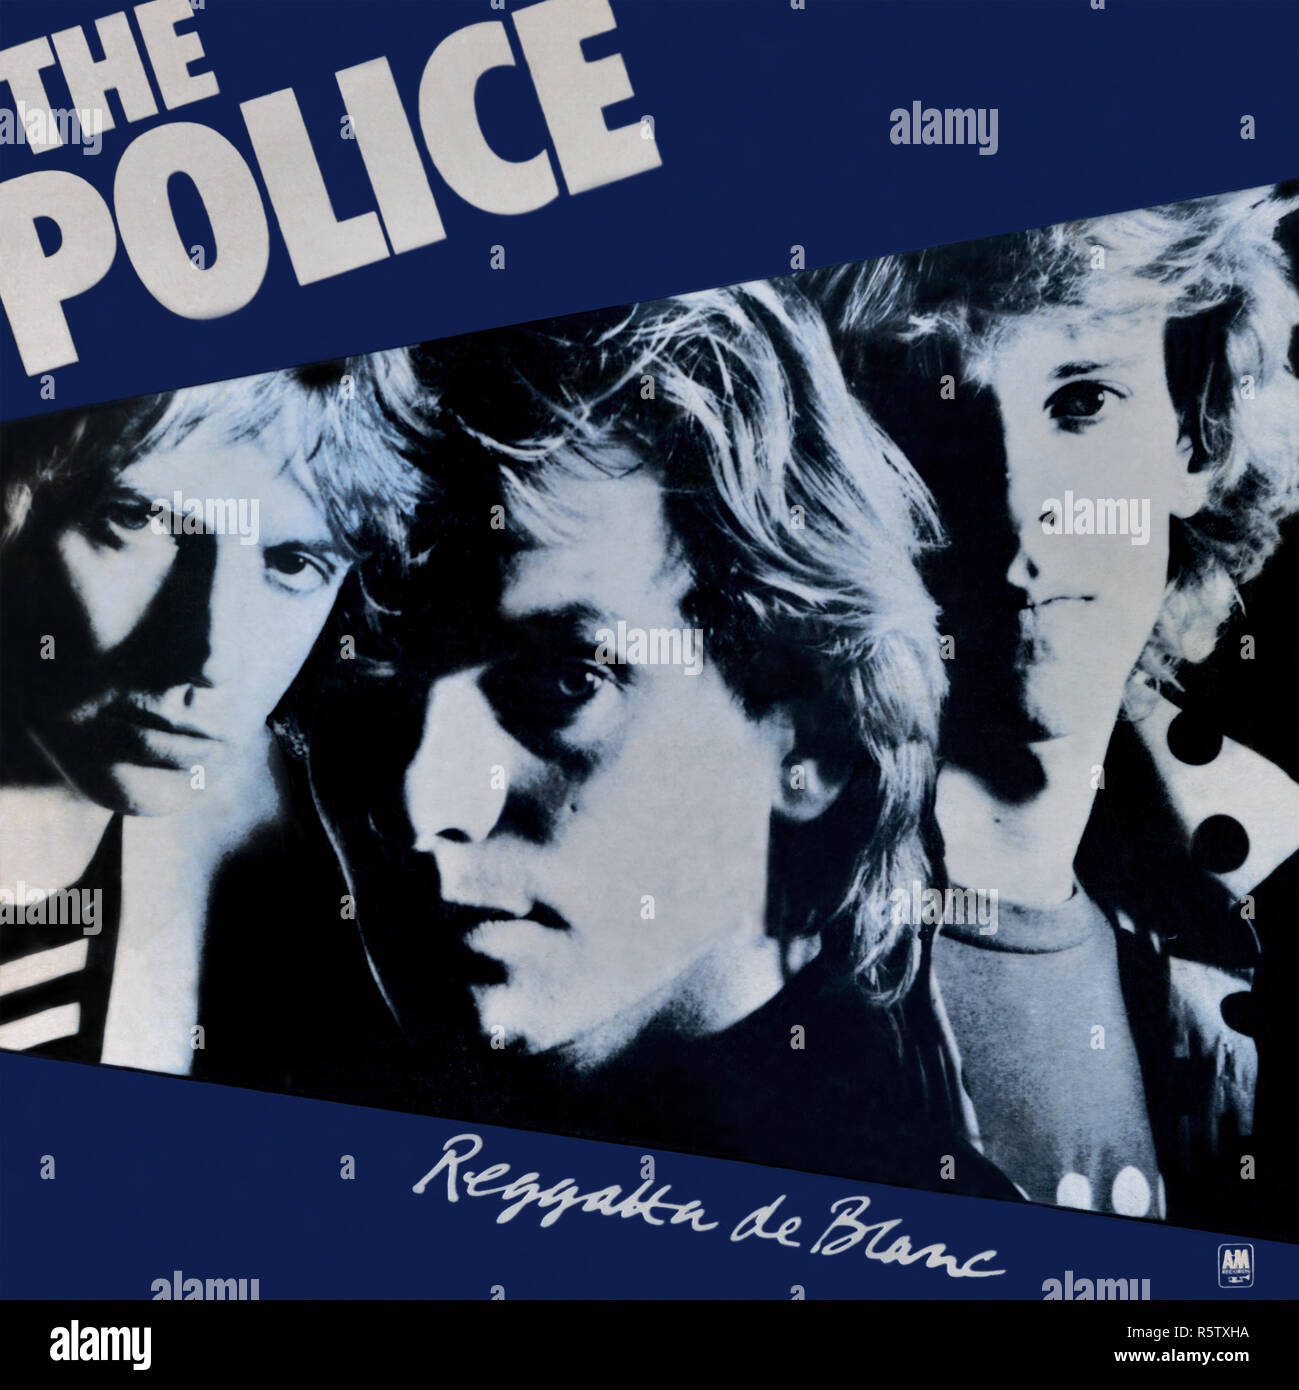 The Police - copertina originale dell'album in vinile - Reggatta de Blanc - 1979 Foto Stock